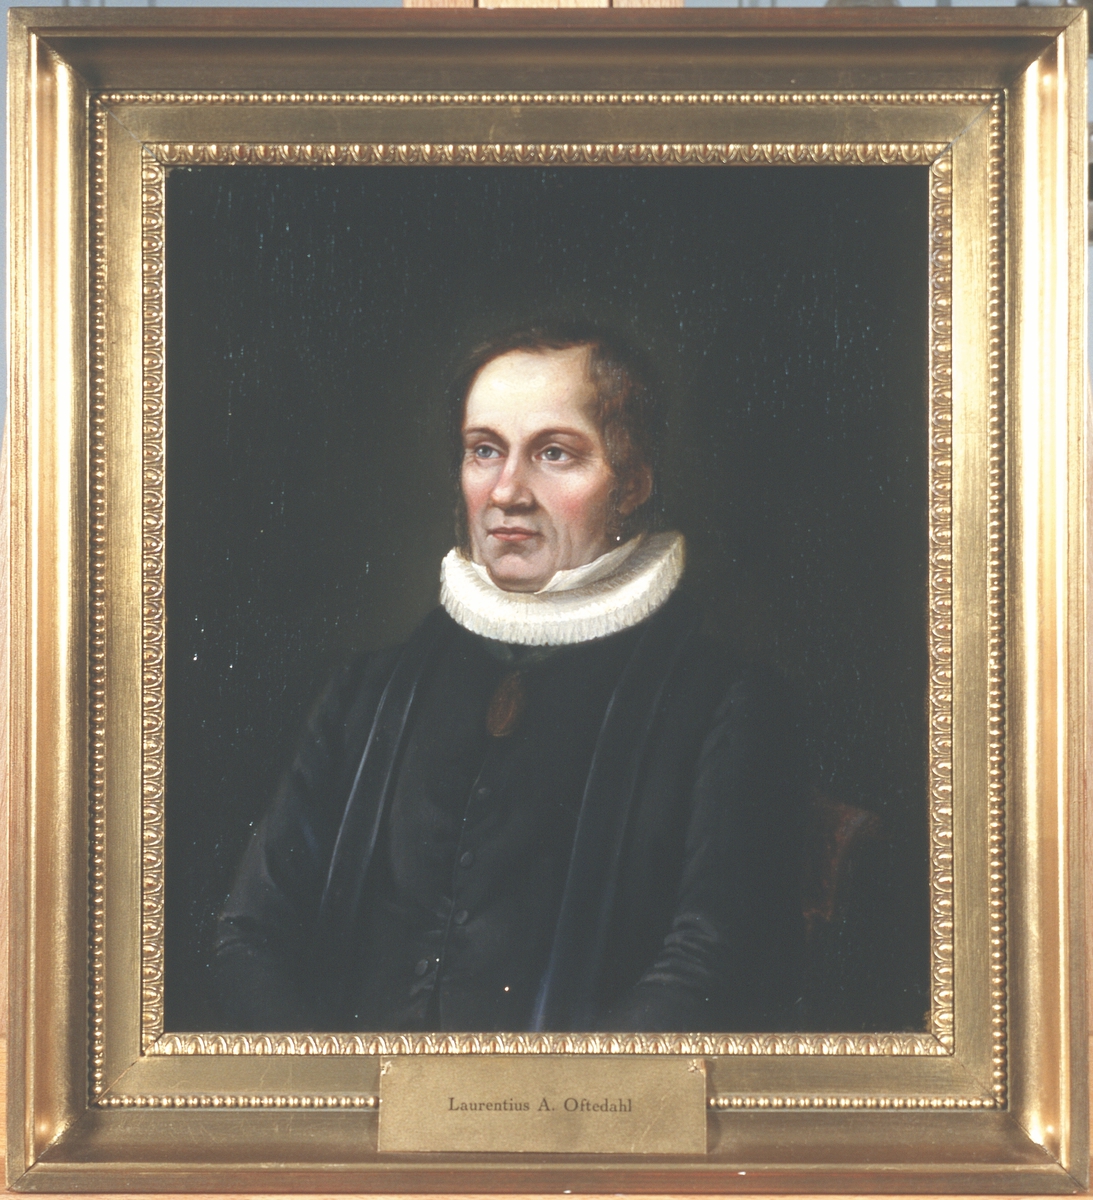 Portrett av Laurentius Oftedal. Prestekjole og -krave. Medalje eller medaljong i bånd rundt halsen.